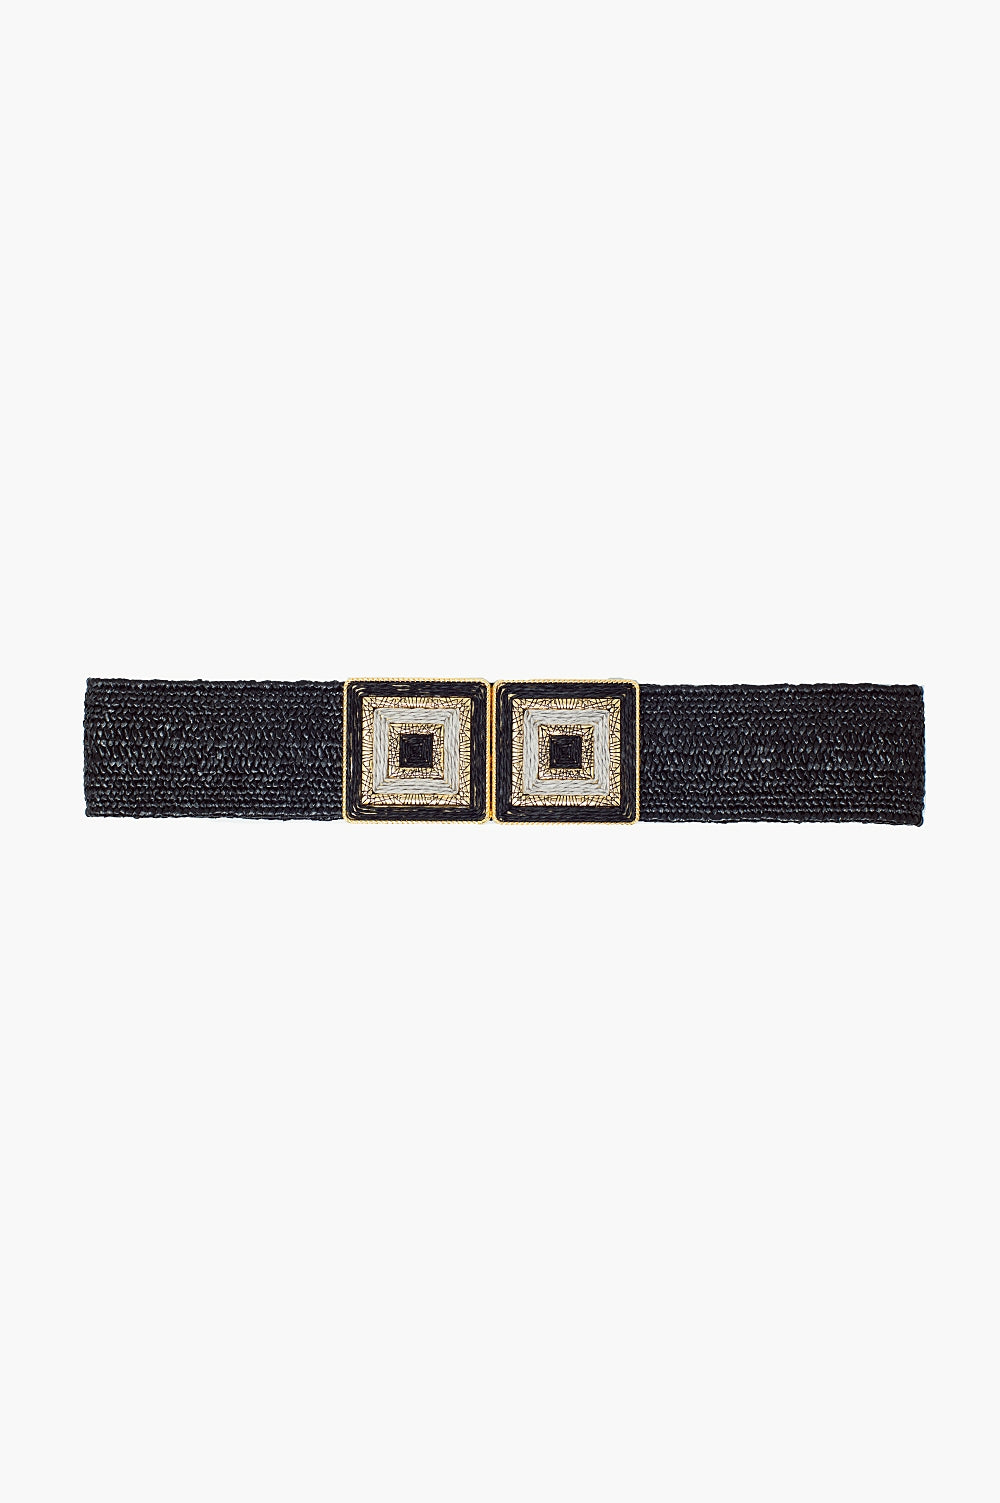 Cintura nera intrecciata con fibbia quadrata con dettagli bianchi e oro